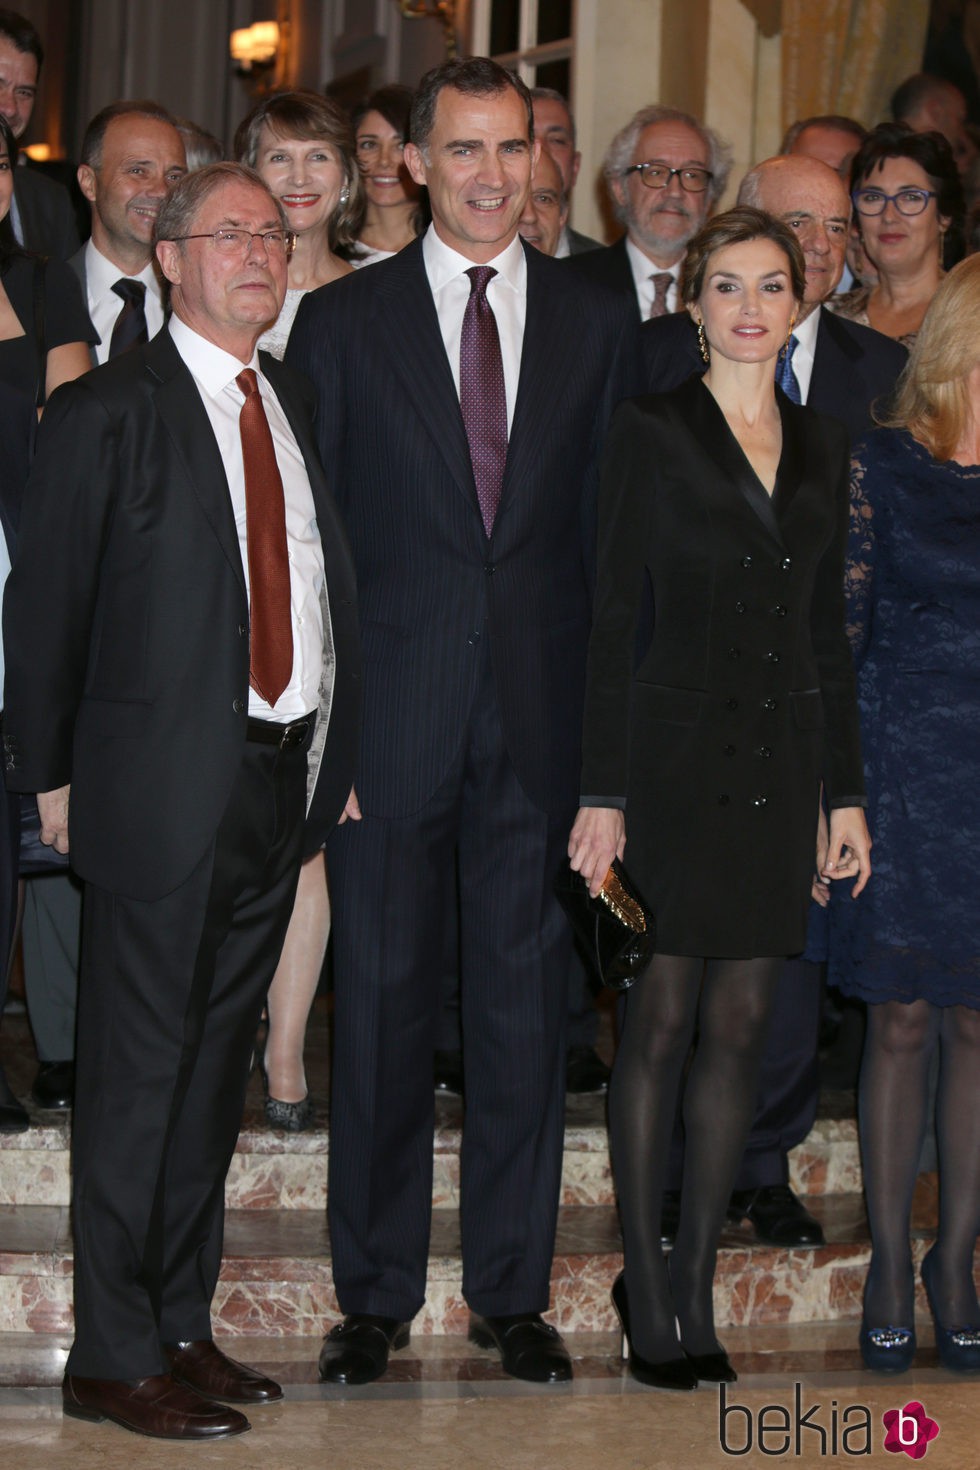 Los Reyes Felipe y Letizia en la entrega del Premio Francisco Cerecedo 2015